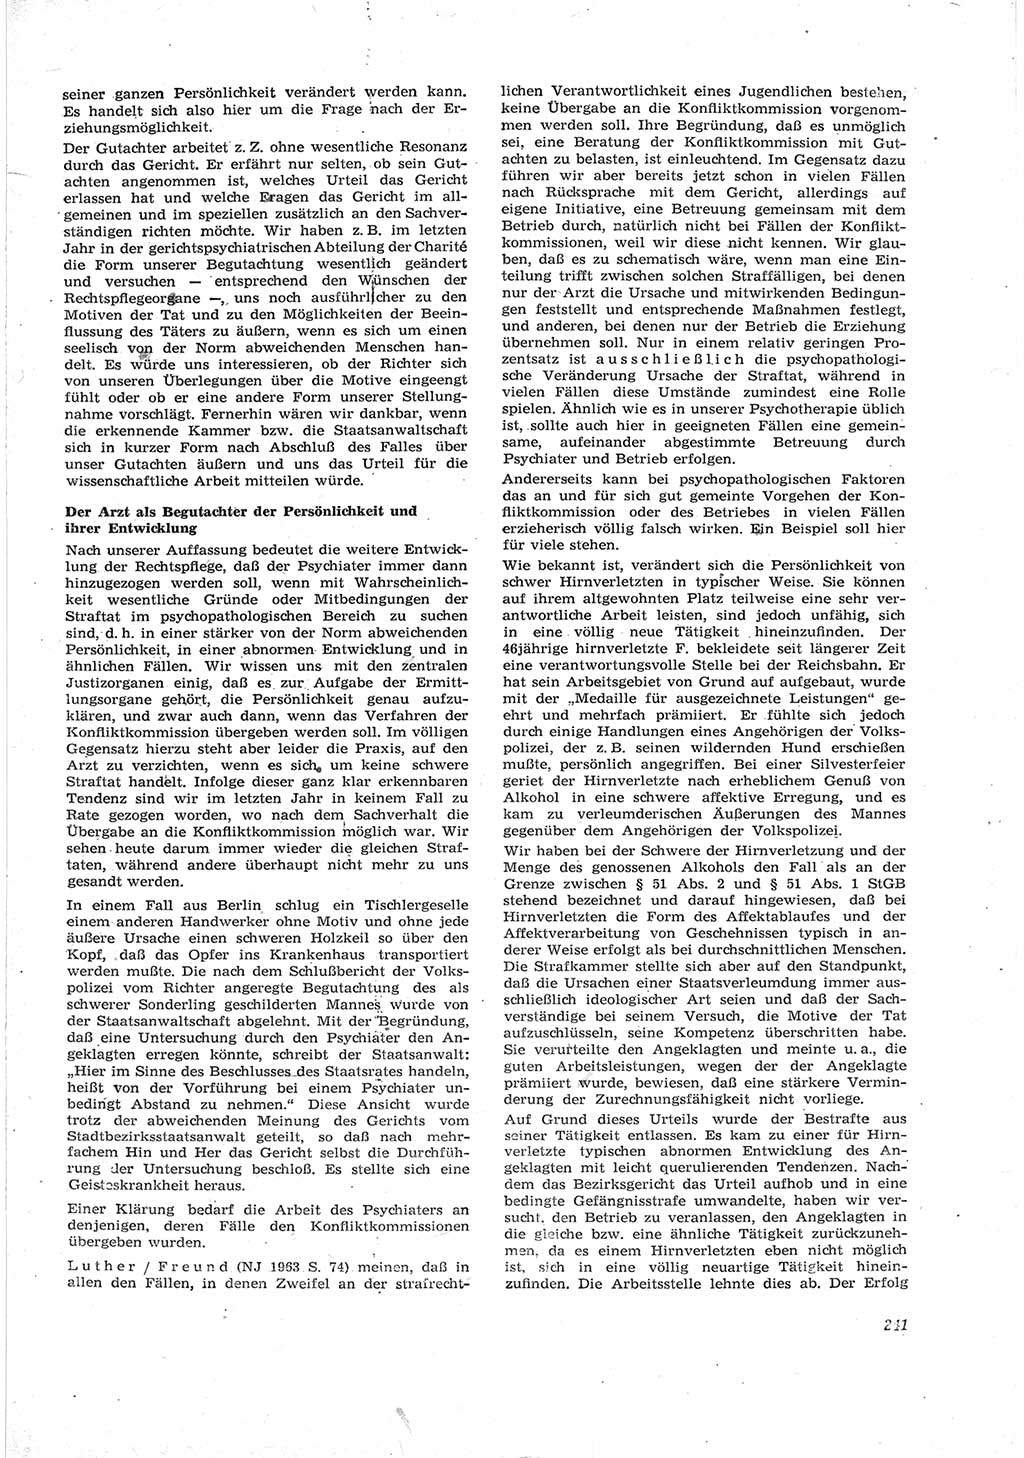 Neue Justiz (NJ), Zeitschrift für Recht und Rechtswissenschaft [Deutsche Demokratische Republik (DDR)], 17. Jahrgang 1963, Seite 241 (NJ DDR 1963, S. 241)